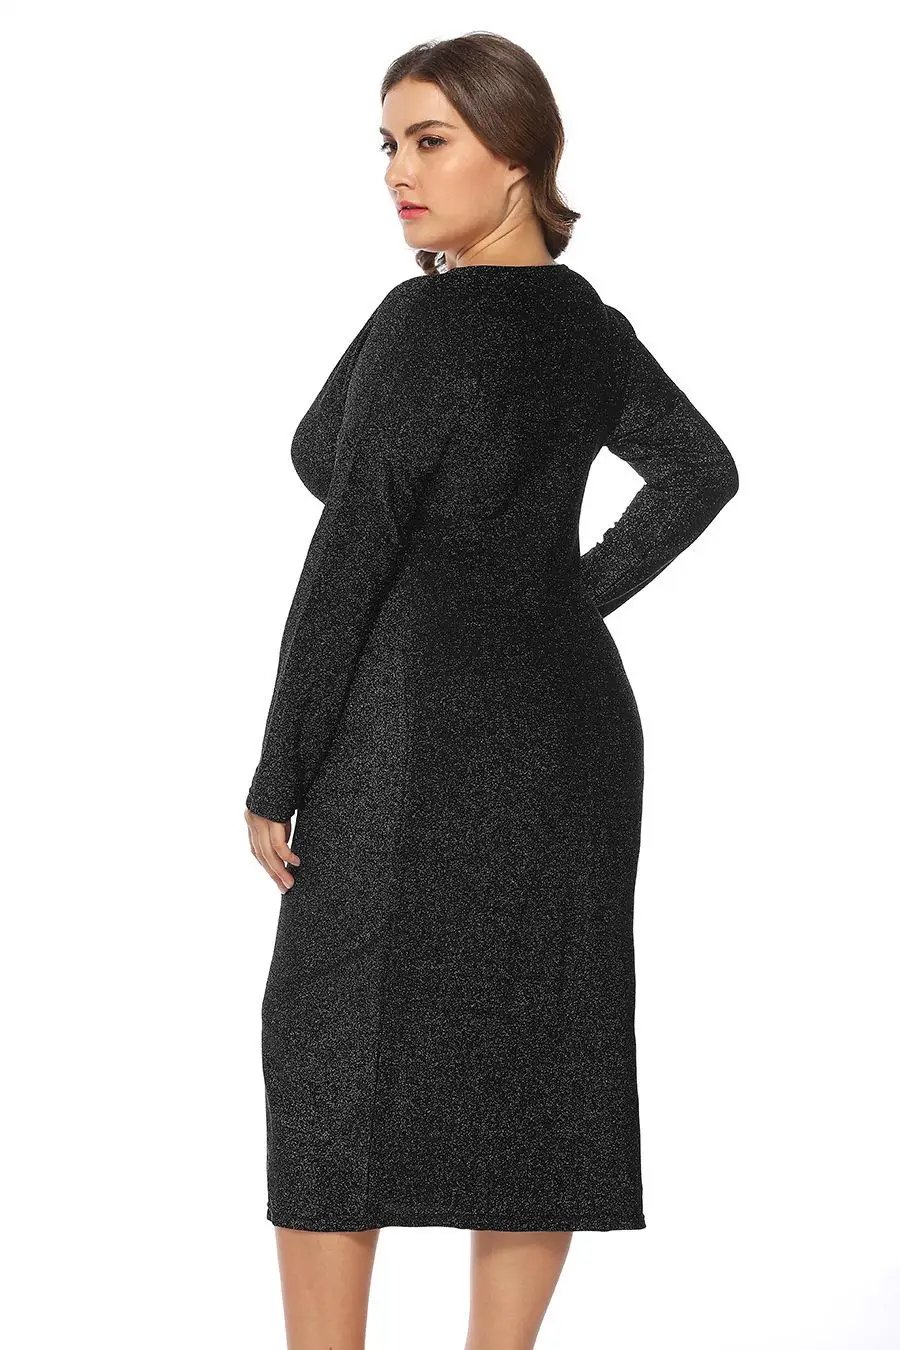 XL-5XL плюс размер сексуальное платье с v-образным вырезом осеннее женское облегающее блестящее платье с длинным рукавом большого размера вечернее женское платье